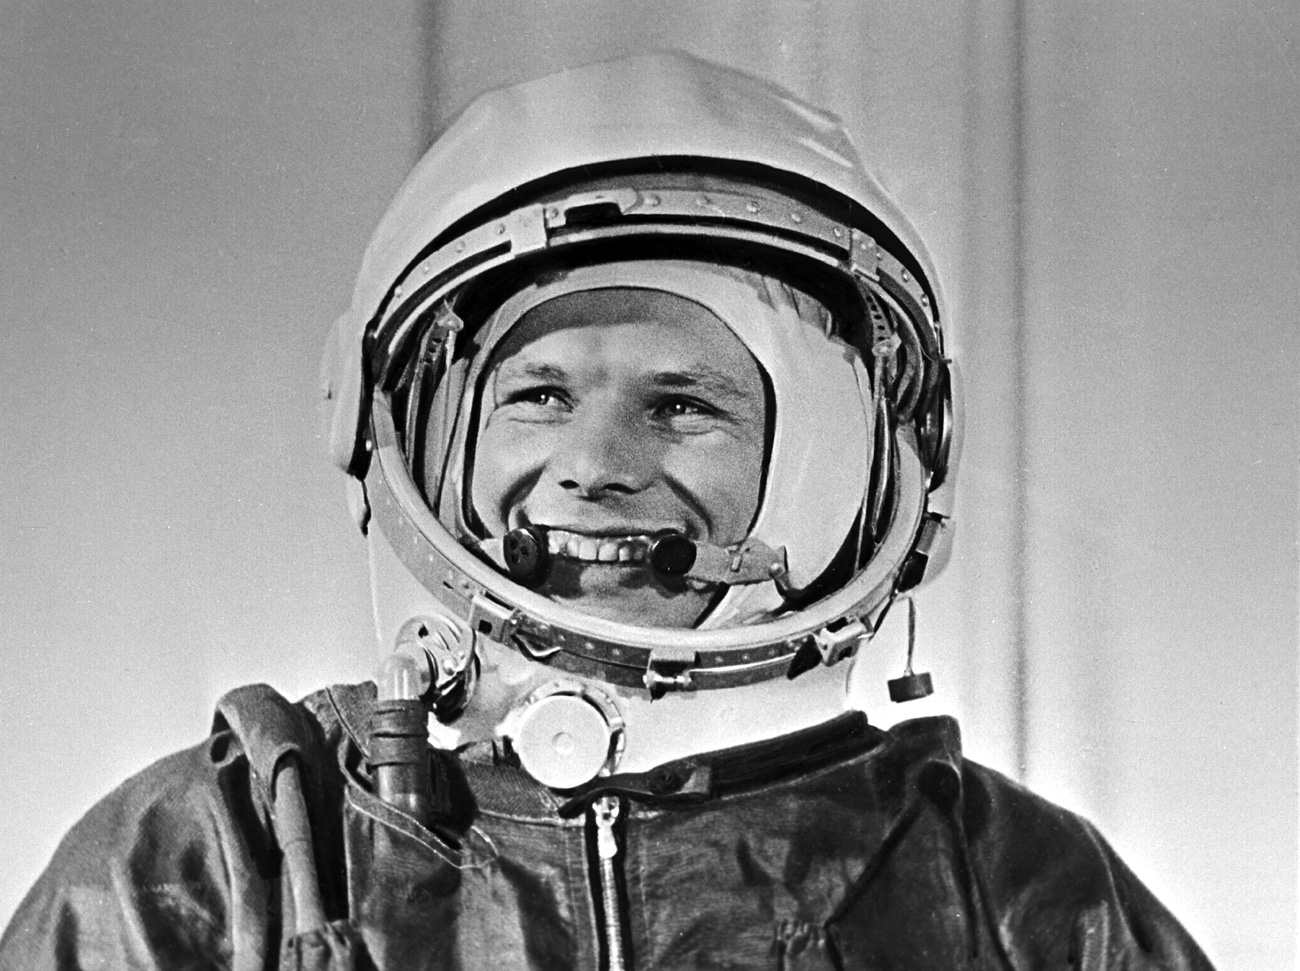 Pilot, kozmonavt in heroj Sovjetske zveze, polkovnik Jurij Gagarin